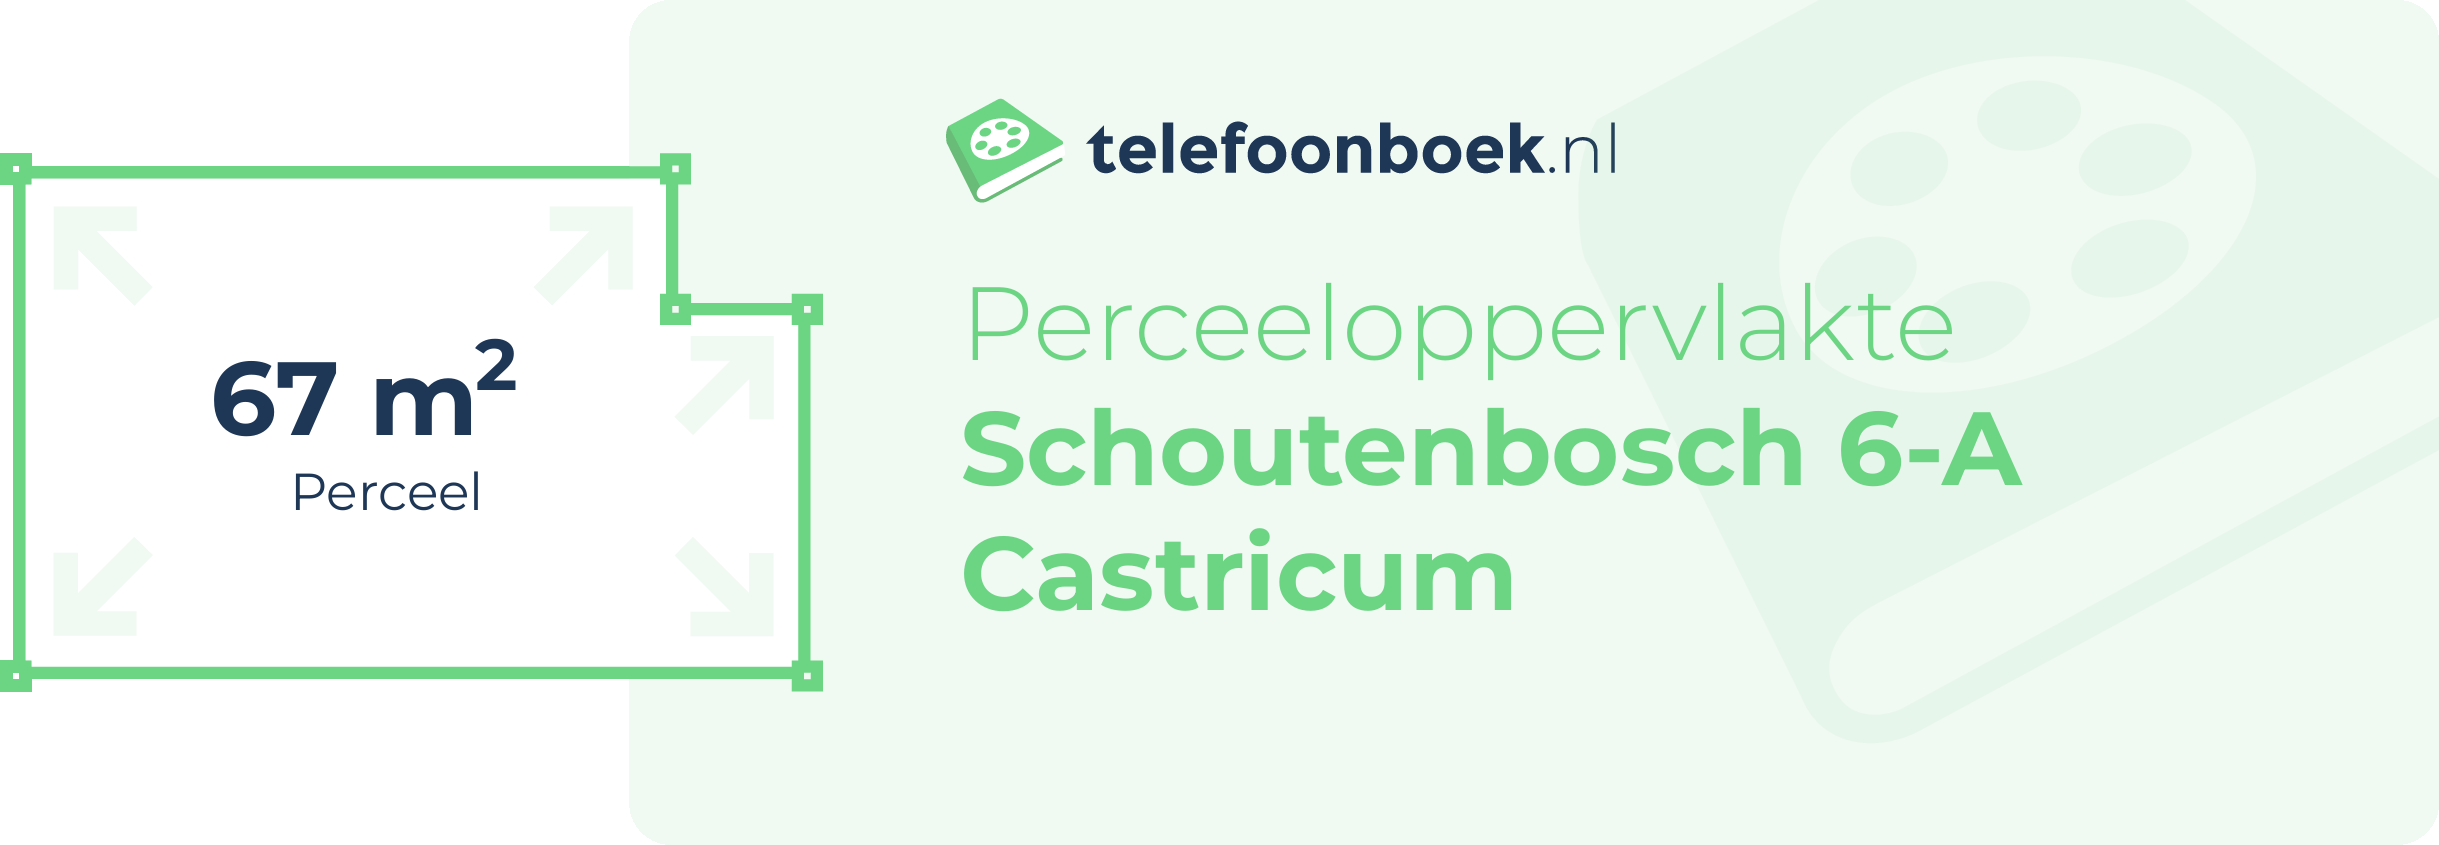 Perceeloppervlakte Schoutenbosch 6-A Castricum